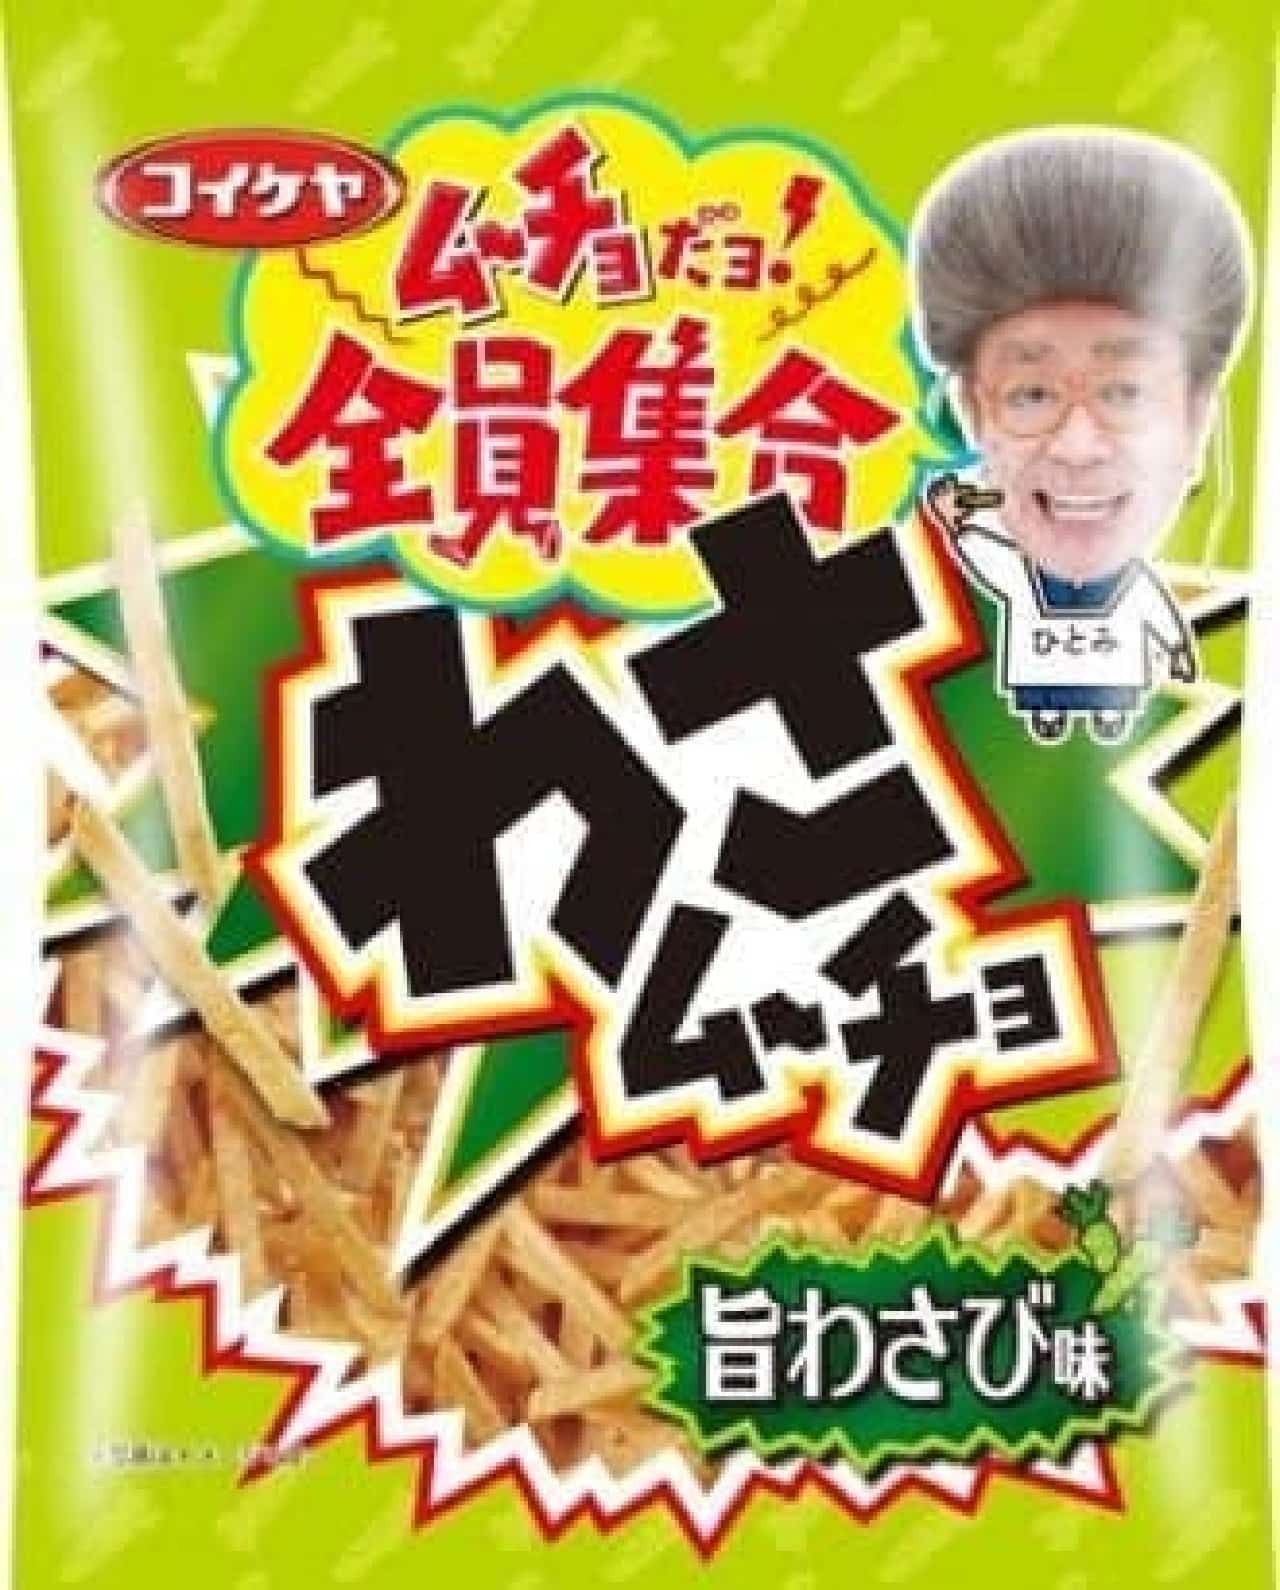 Koike-ya "Stick Wasabi Mucho Delicious Wasabi Flavor"